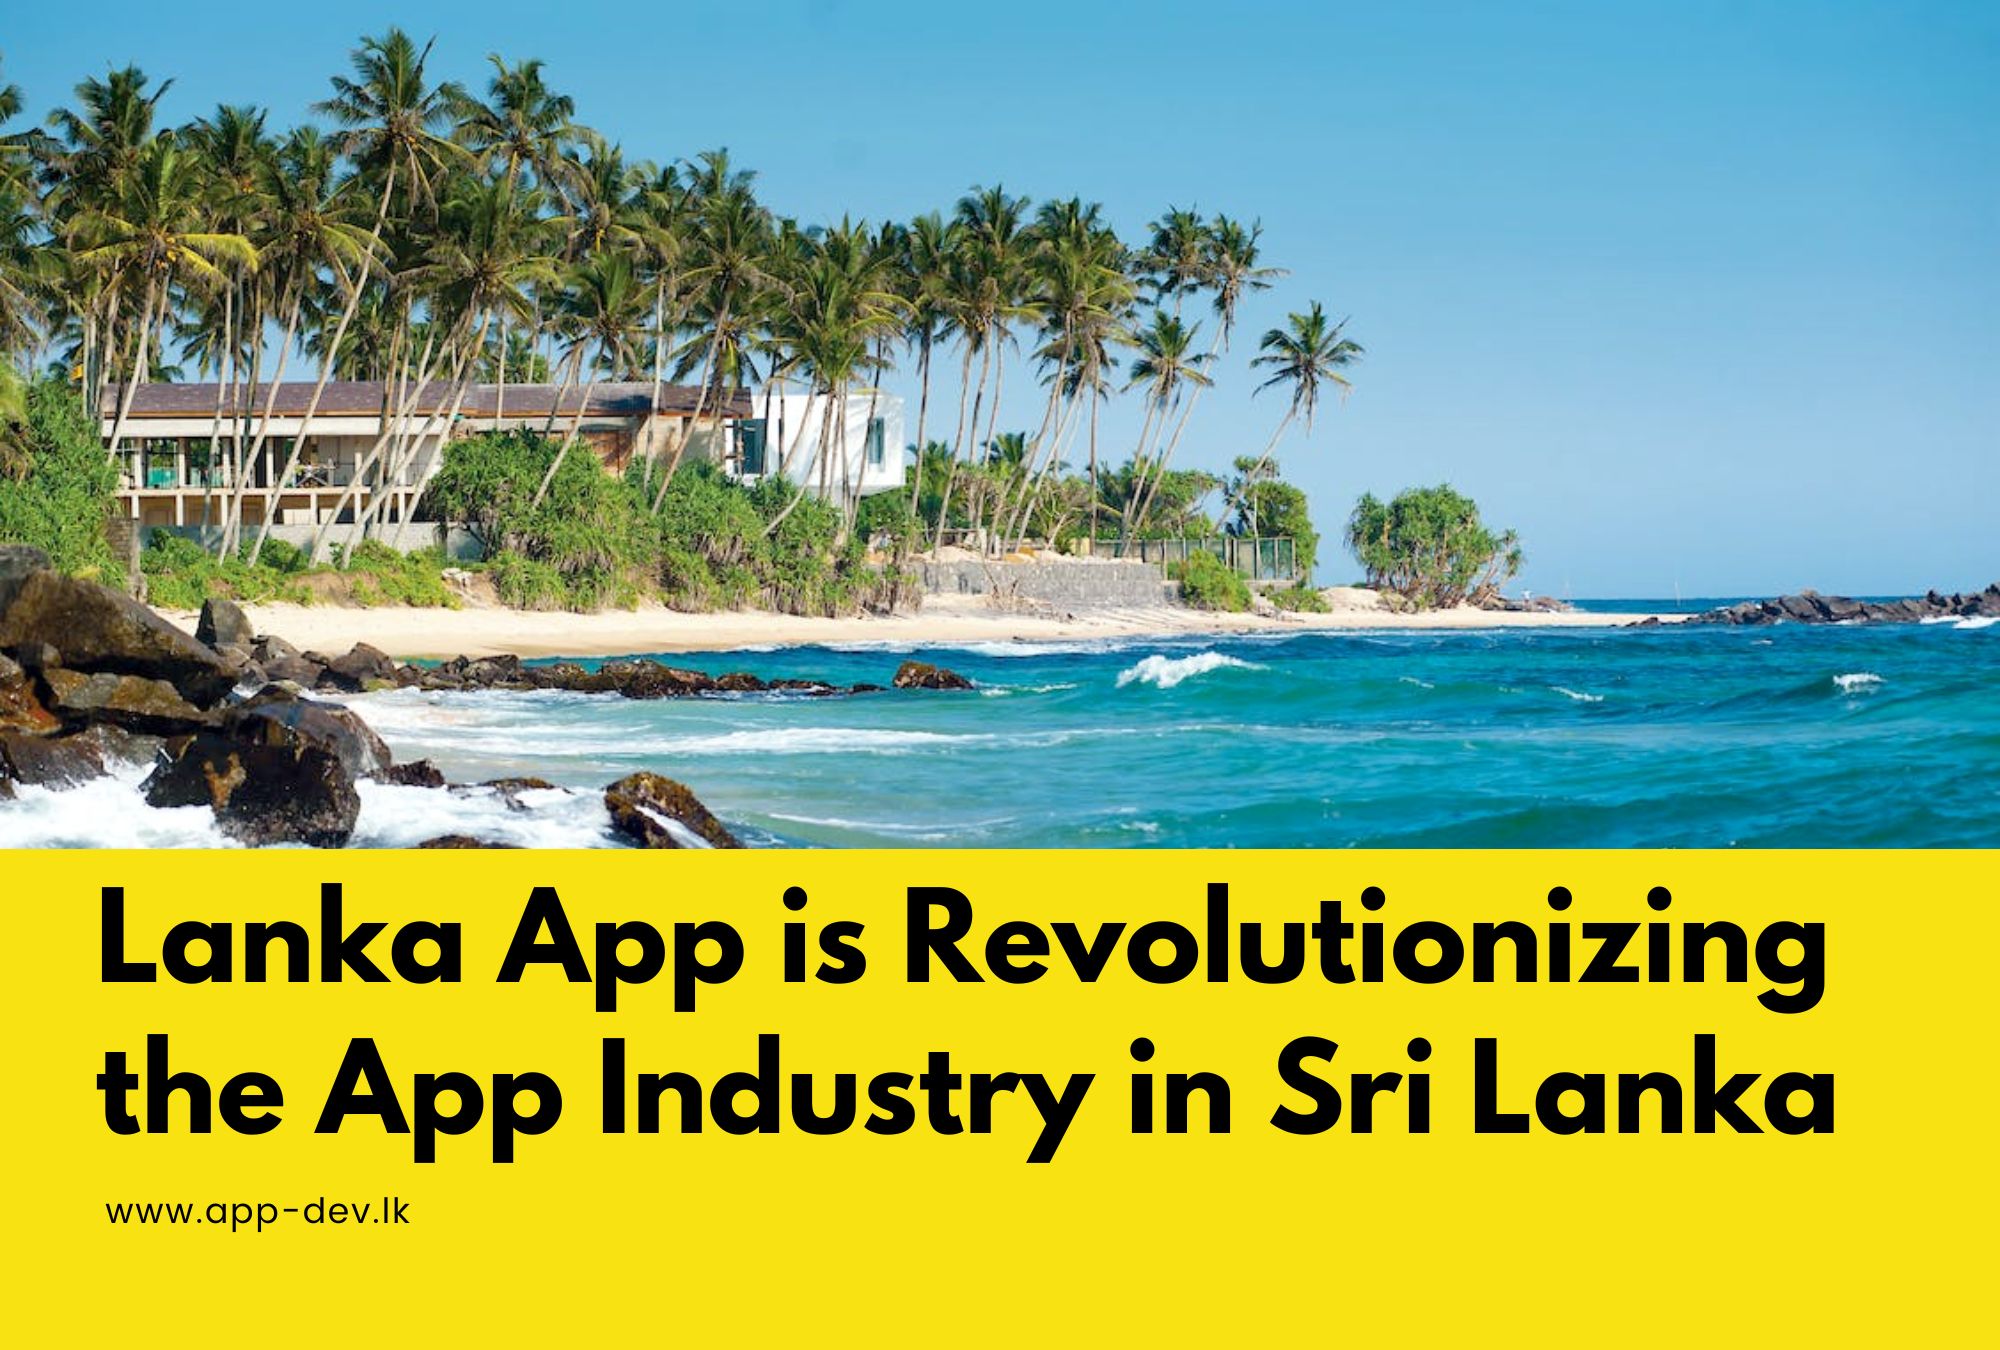 Lanka App, app development in Sri Lanka